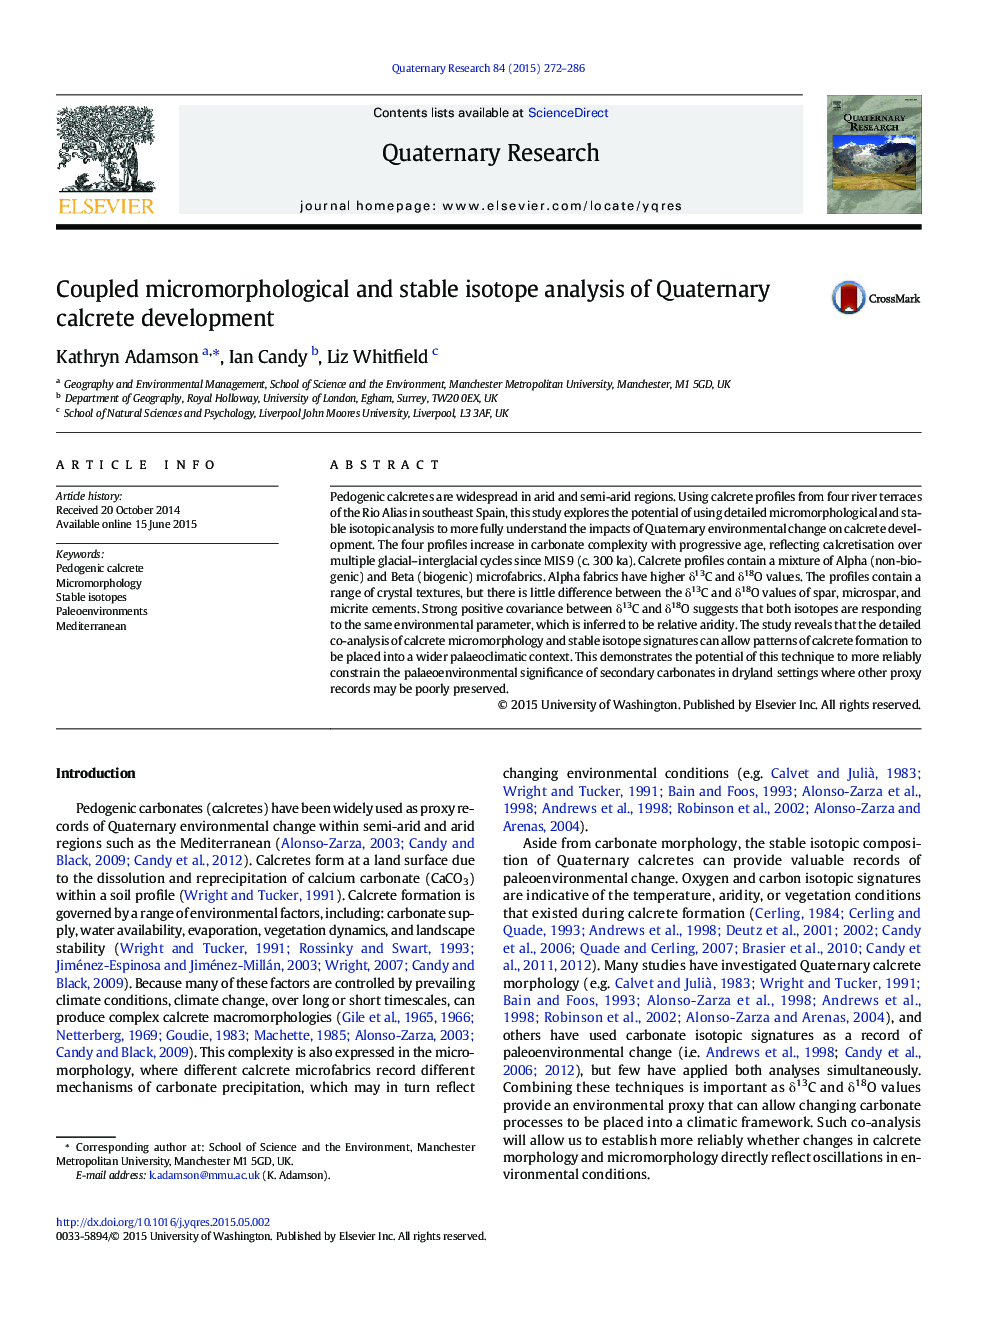 تجزیه و تحلیل ایزوتوپ های میکرومورفولوژیک و پایدار همراه با توسعه کالکرت کواترنر 